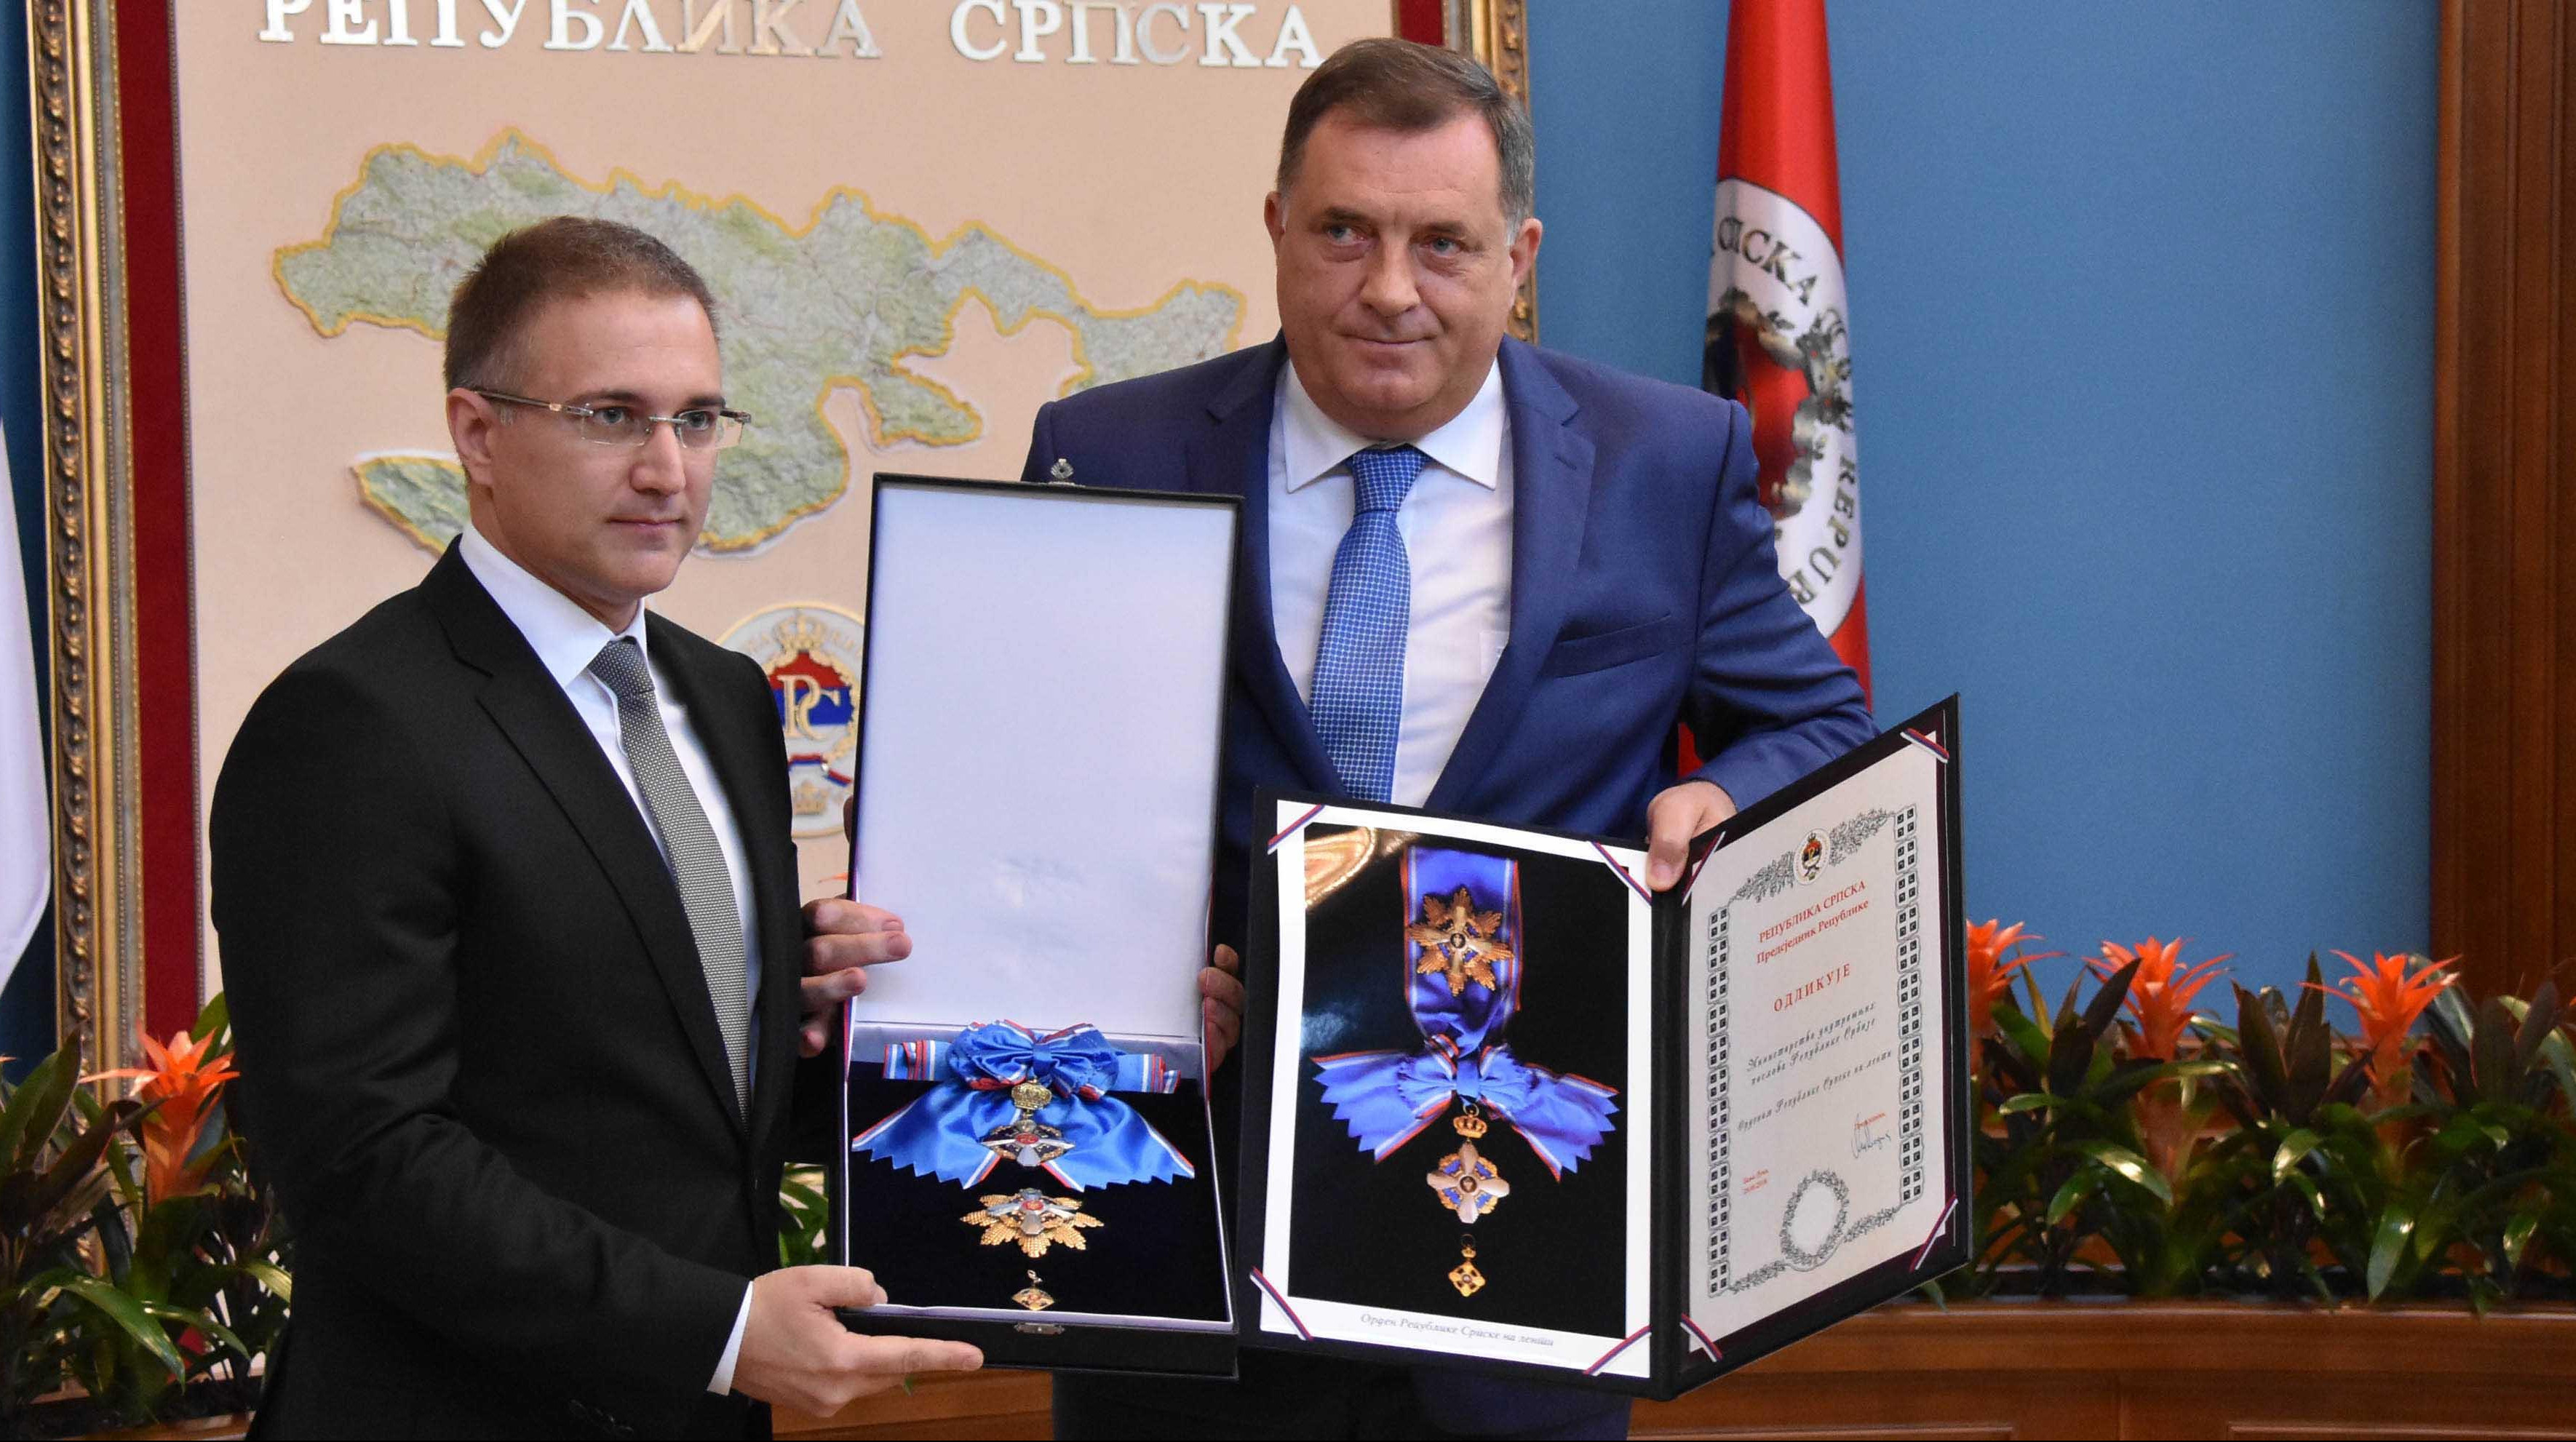 (FOTO) STEFANOVIĆ SA DODIKOM U BANJALUCI: Srbija i Republika Srpska su primer dobre saradnje